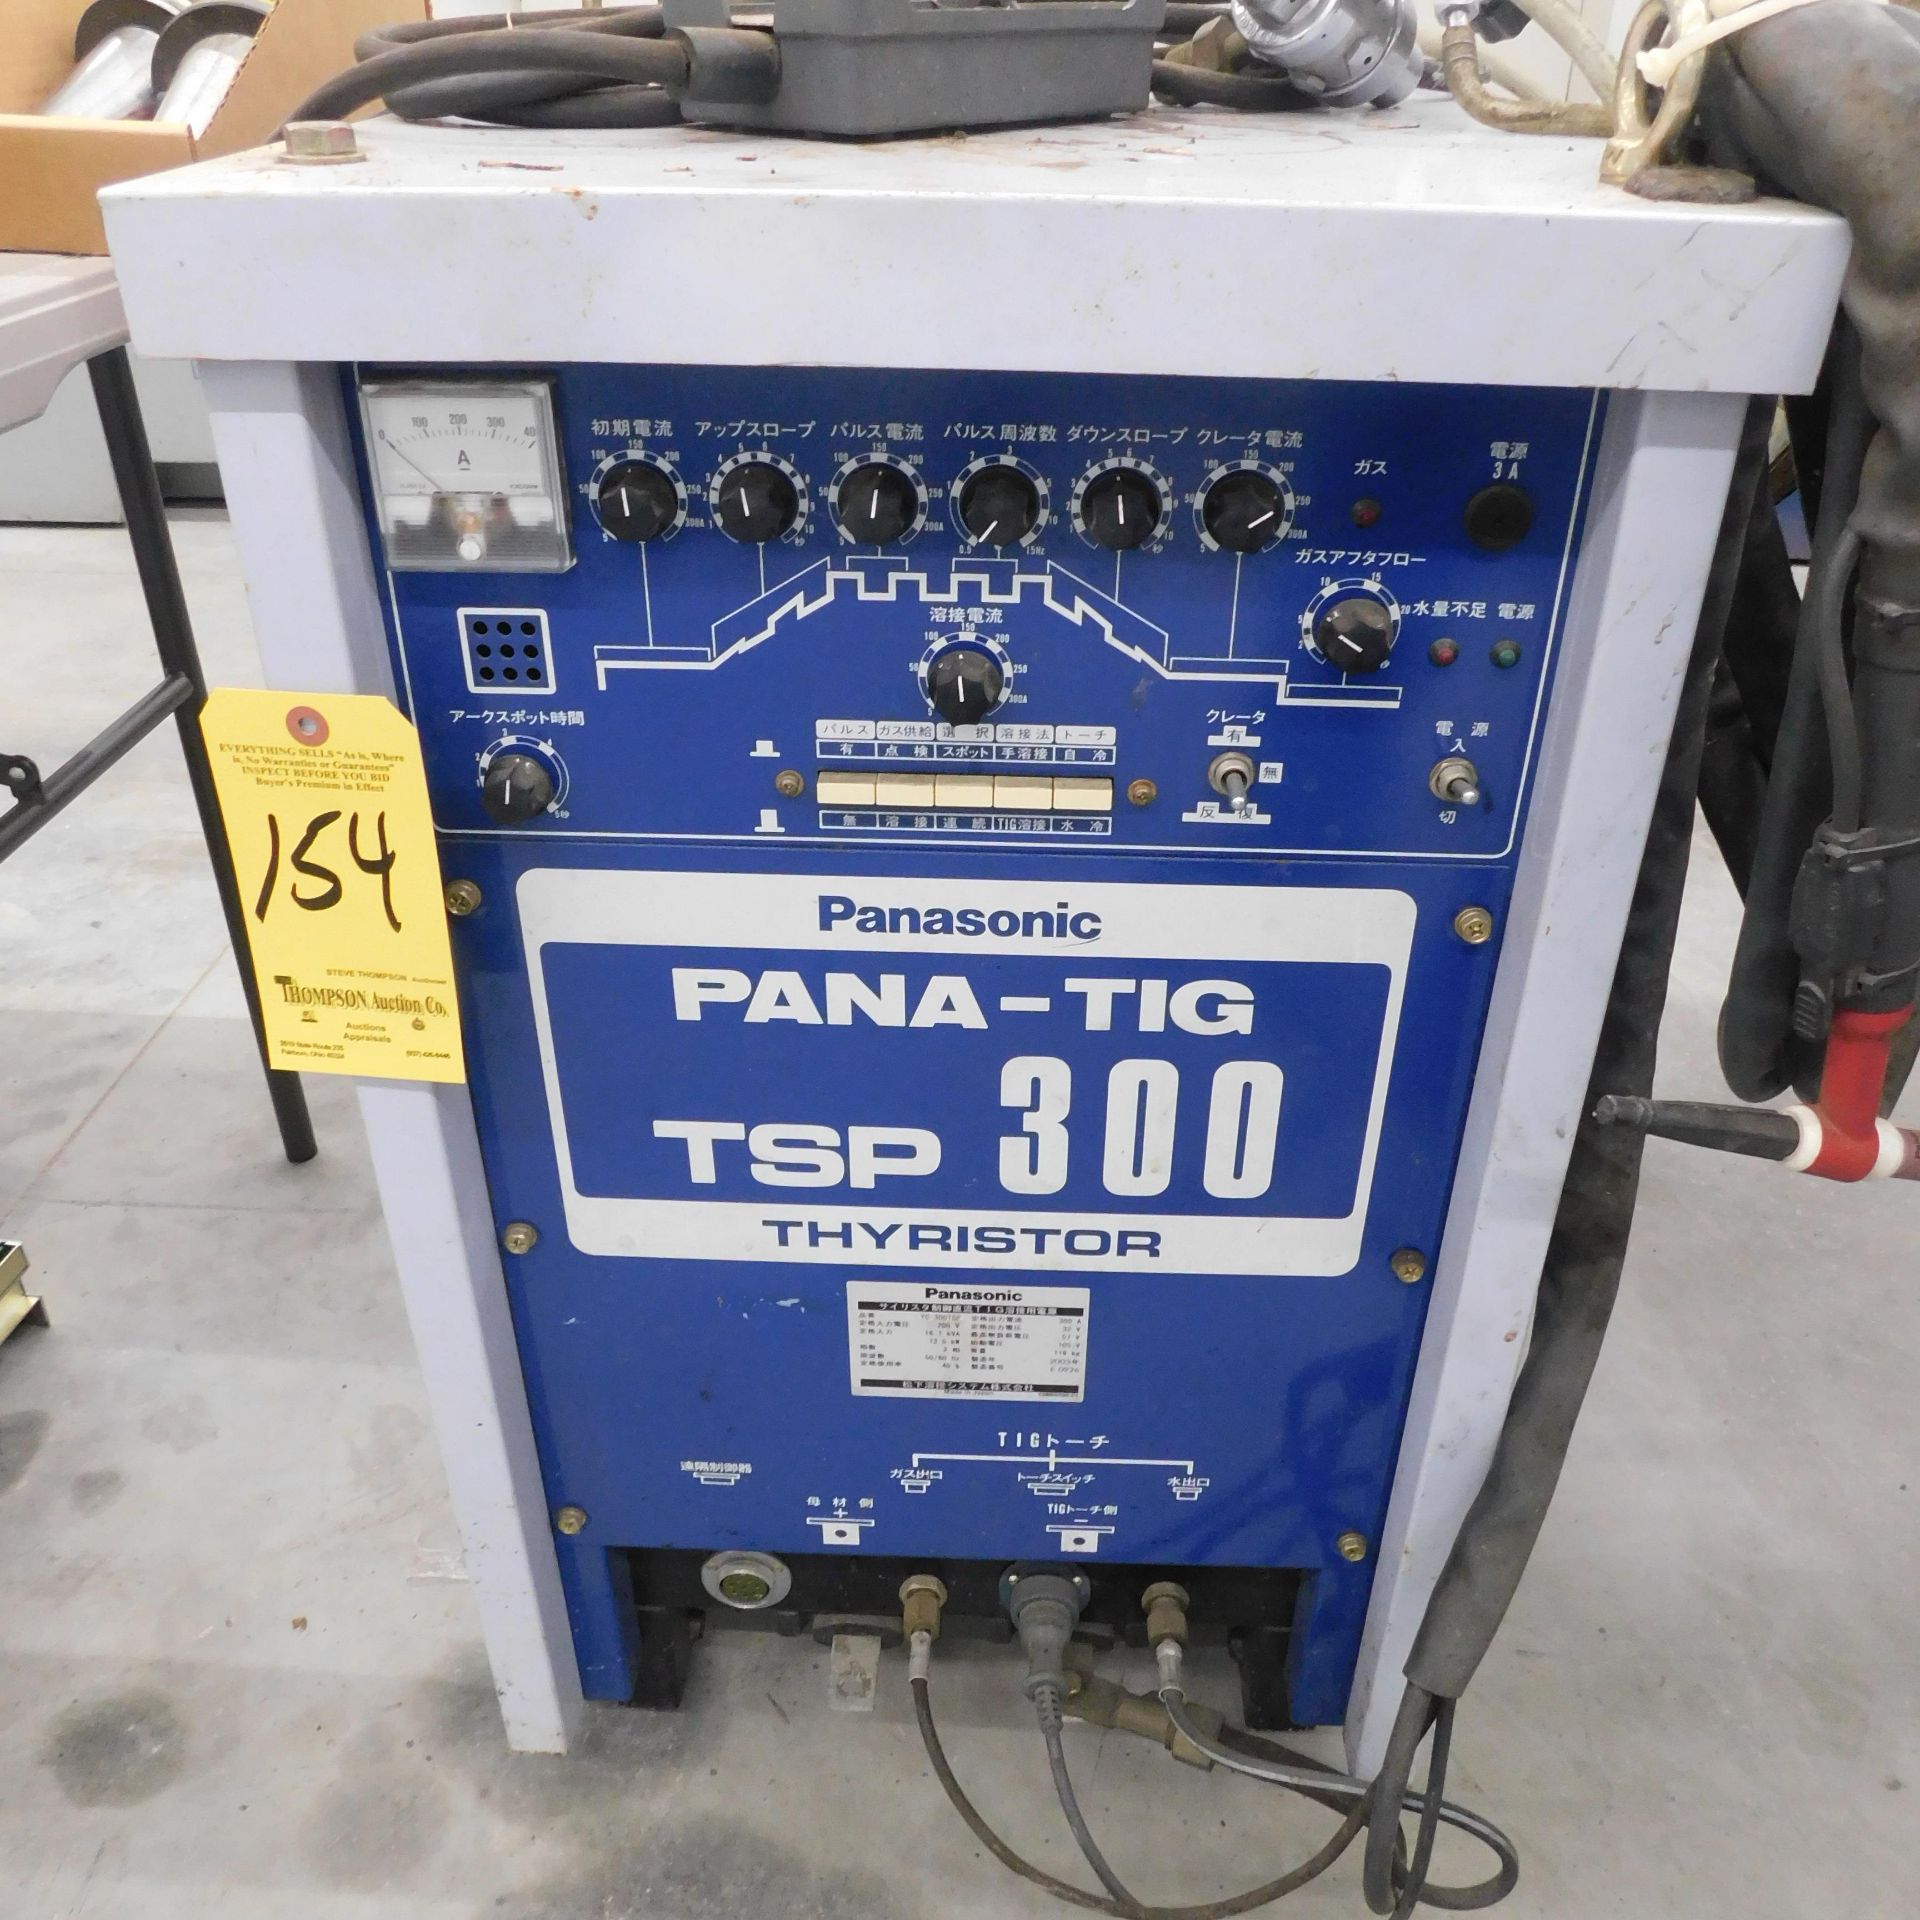 Panasonic TSP-300 Pana-Tig Tig Welder, s/n E0926, New 2003